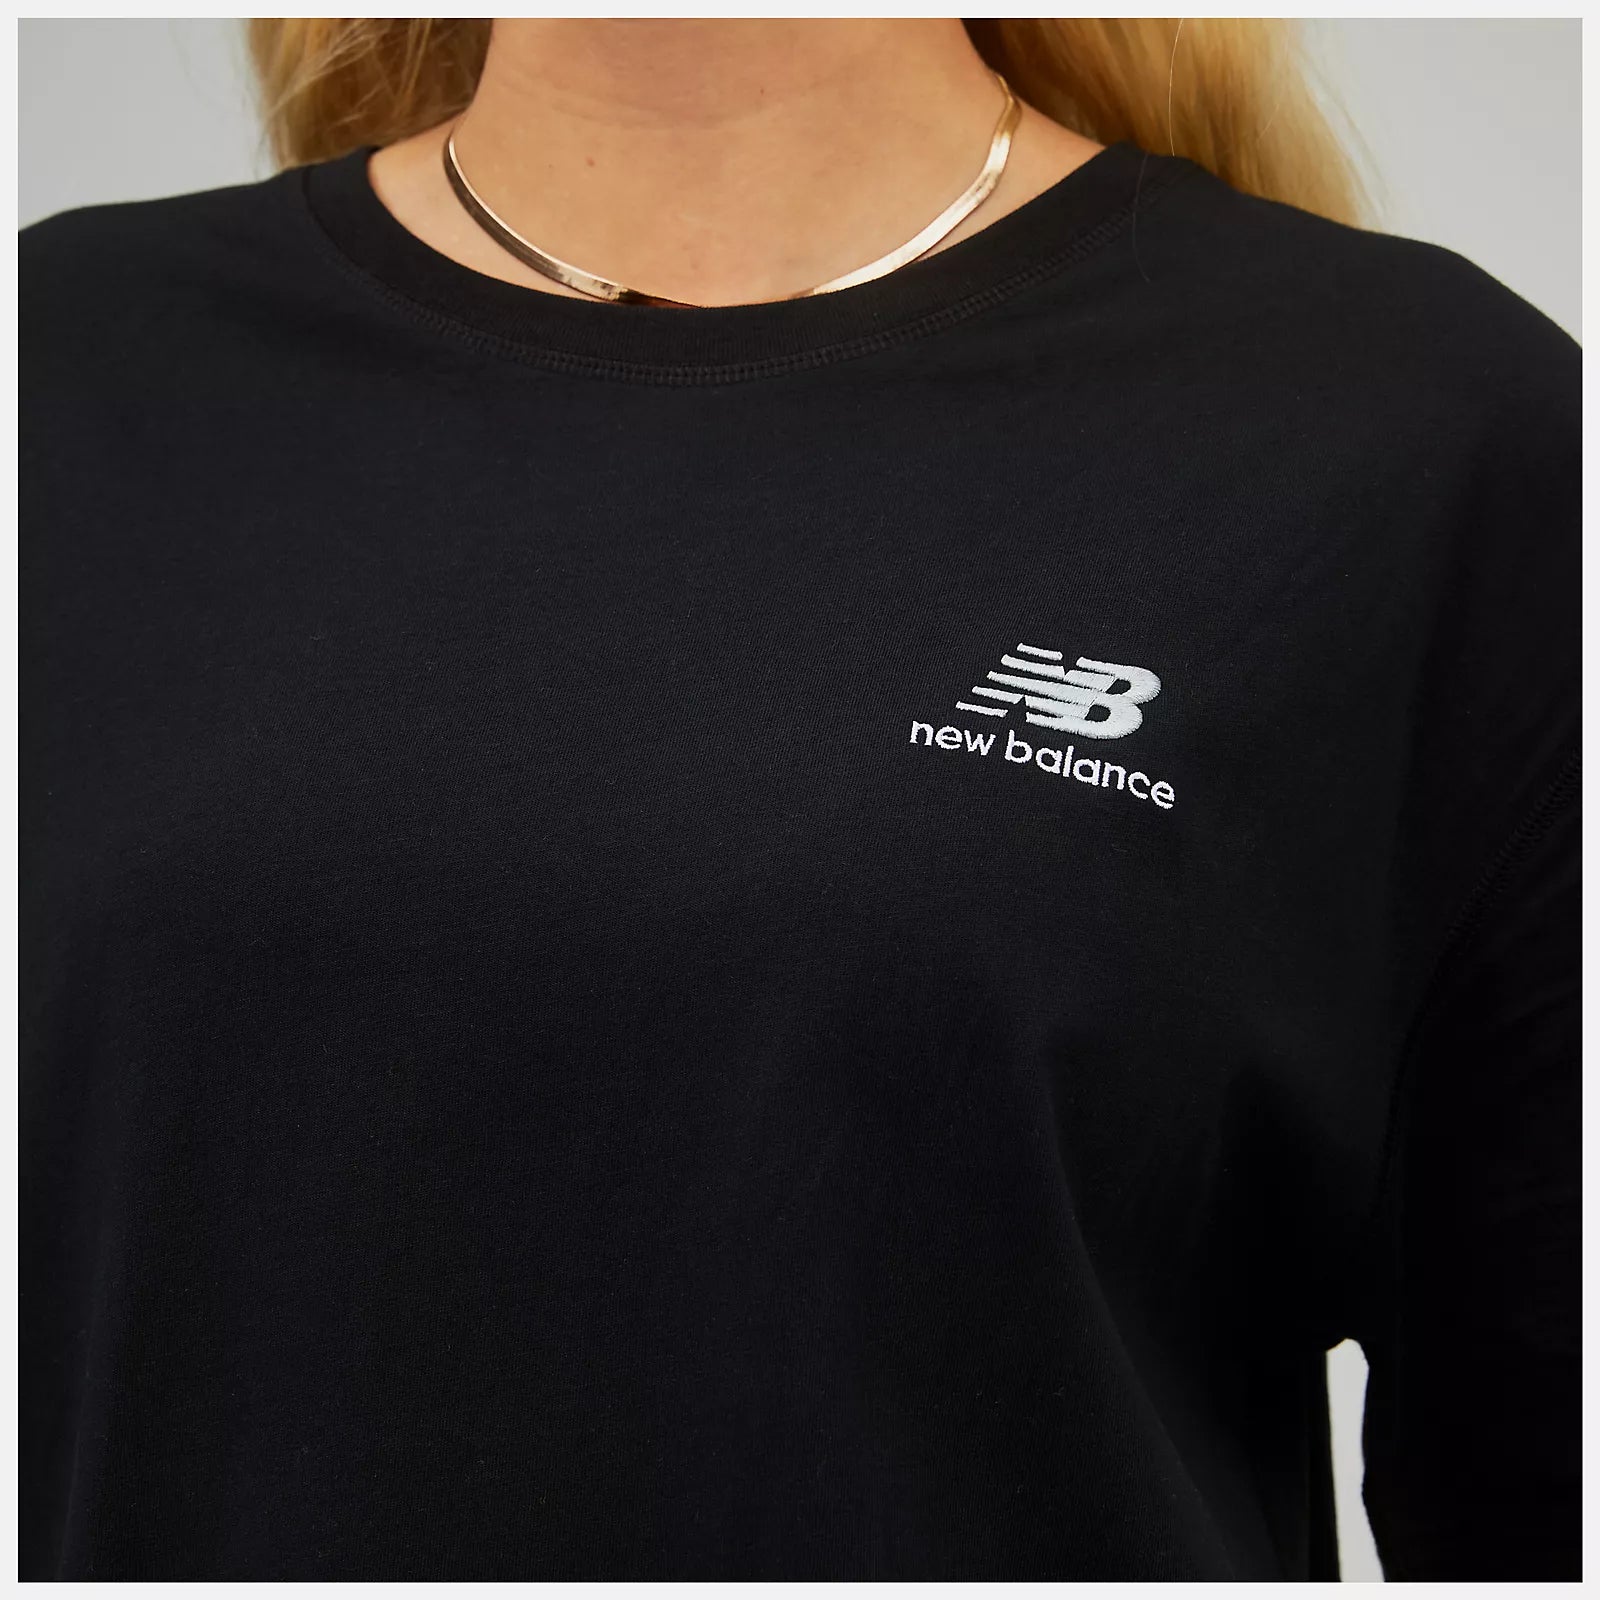 T-Shirt Uni-ssentials Cotton Black - Unisex